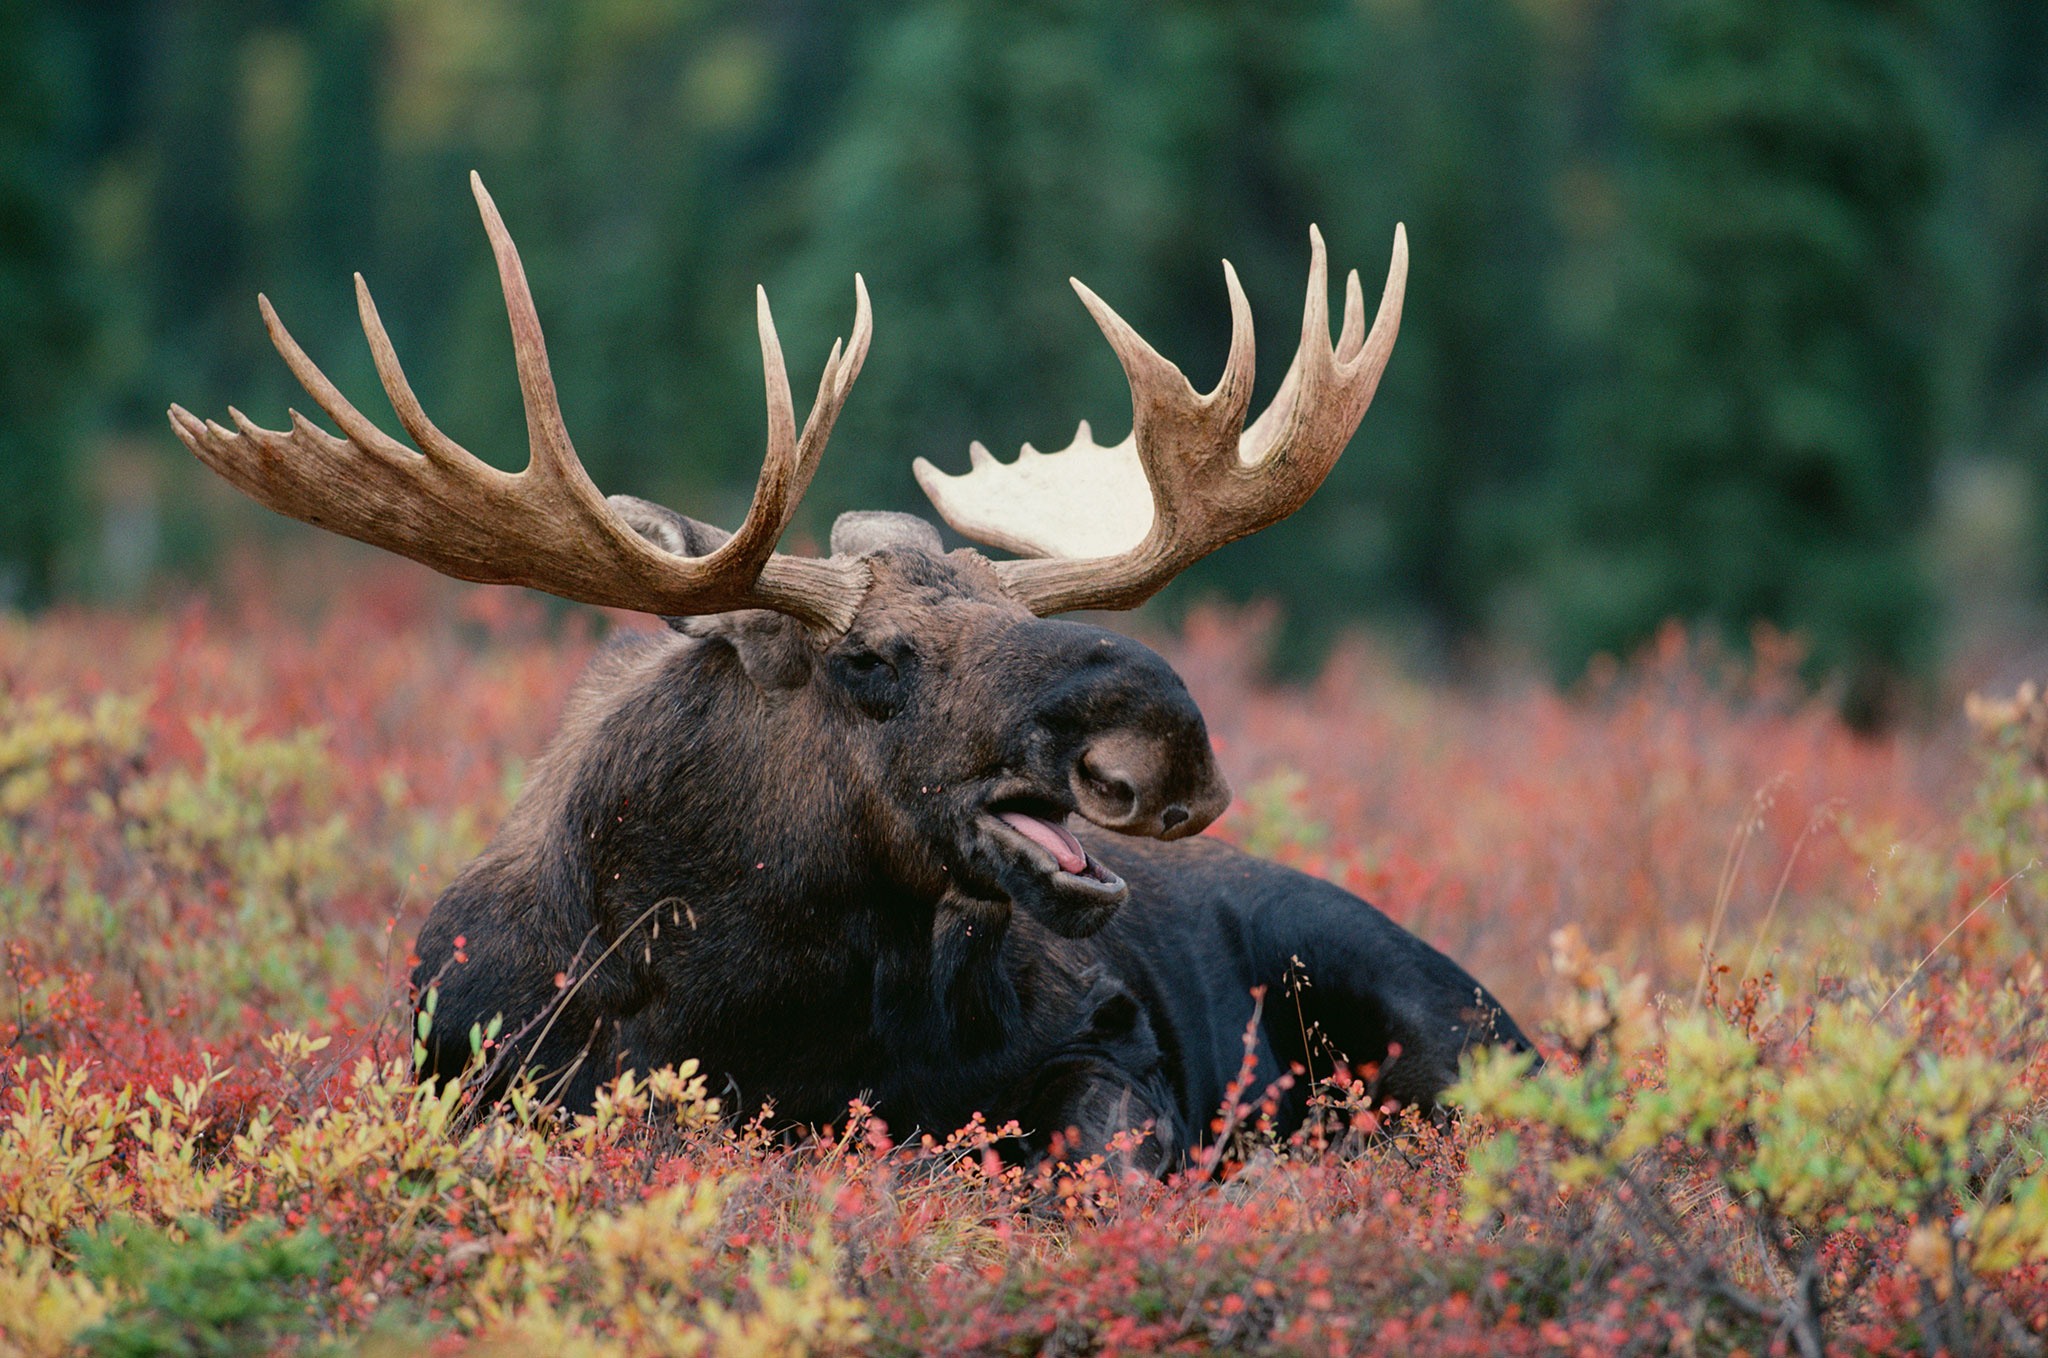 Moose, HQ moose pictures, 4K wallpapers, Animal wonders, 2050x1360 HD Desktop